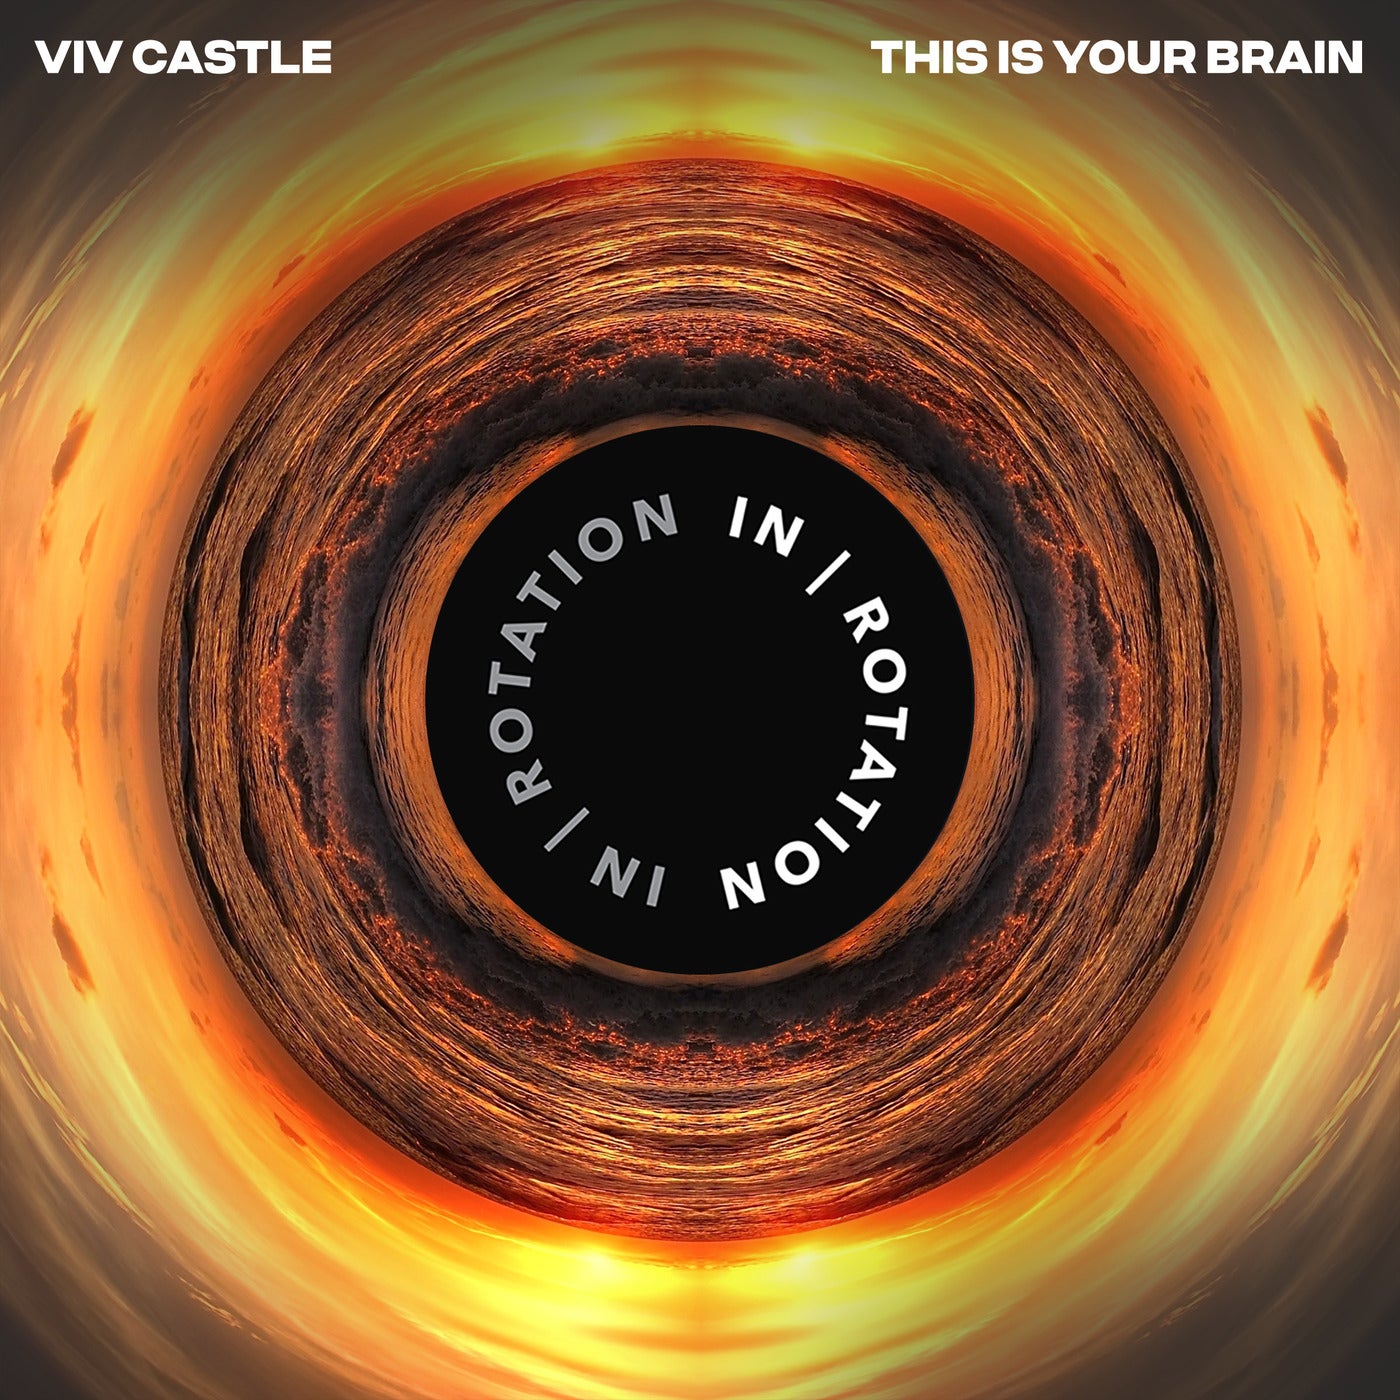 Cover - Viv Castle - This Is Your Brain (Original Mix)